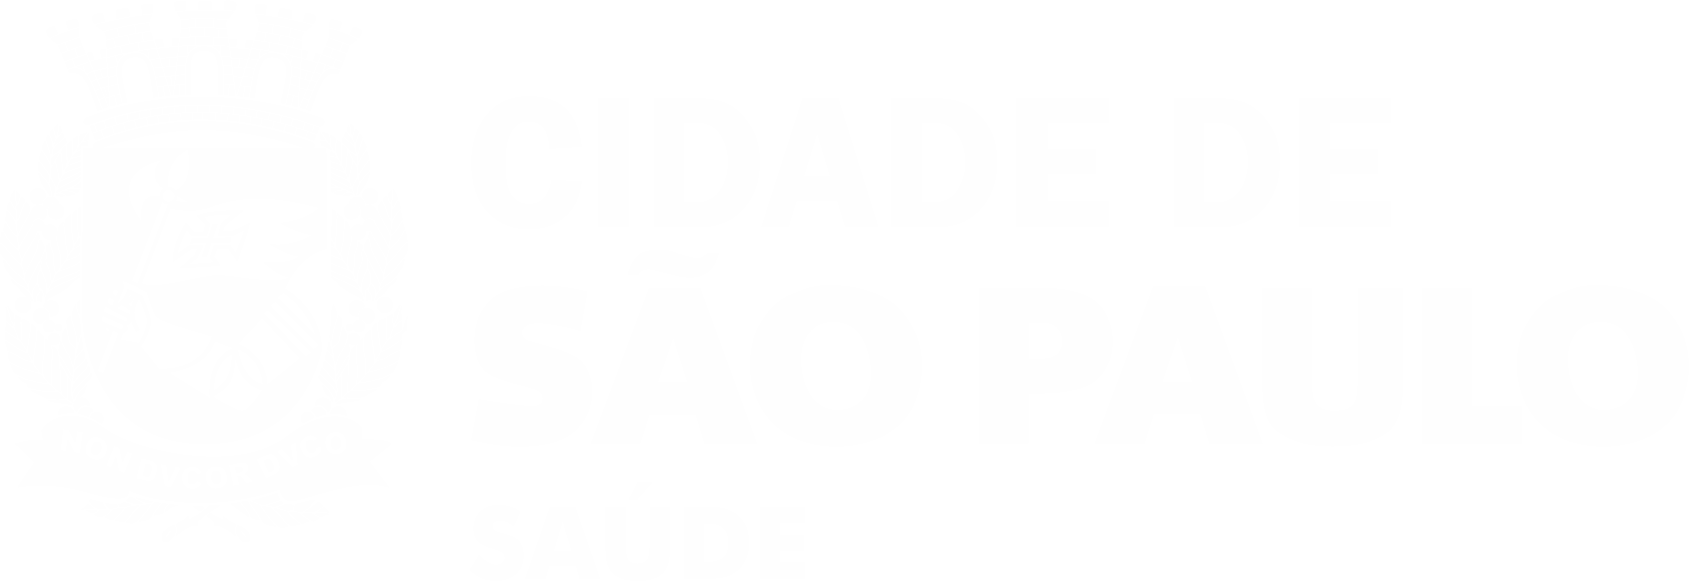 A imagem é um logo da Secretaria Municipal da Saúde, formado por um brasão e ao seu lado direito está escrito Cidade de São Paulo Saúde